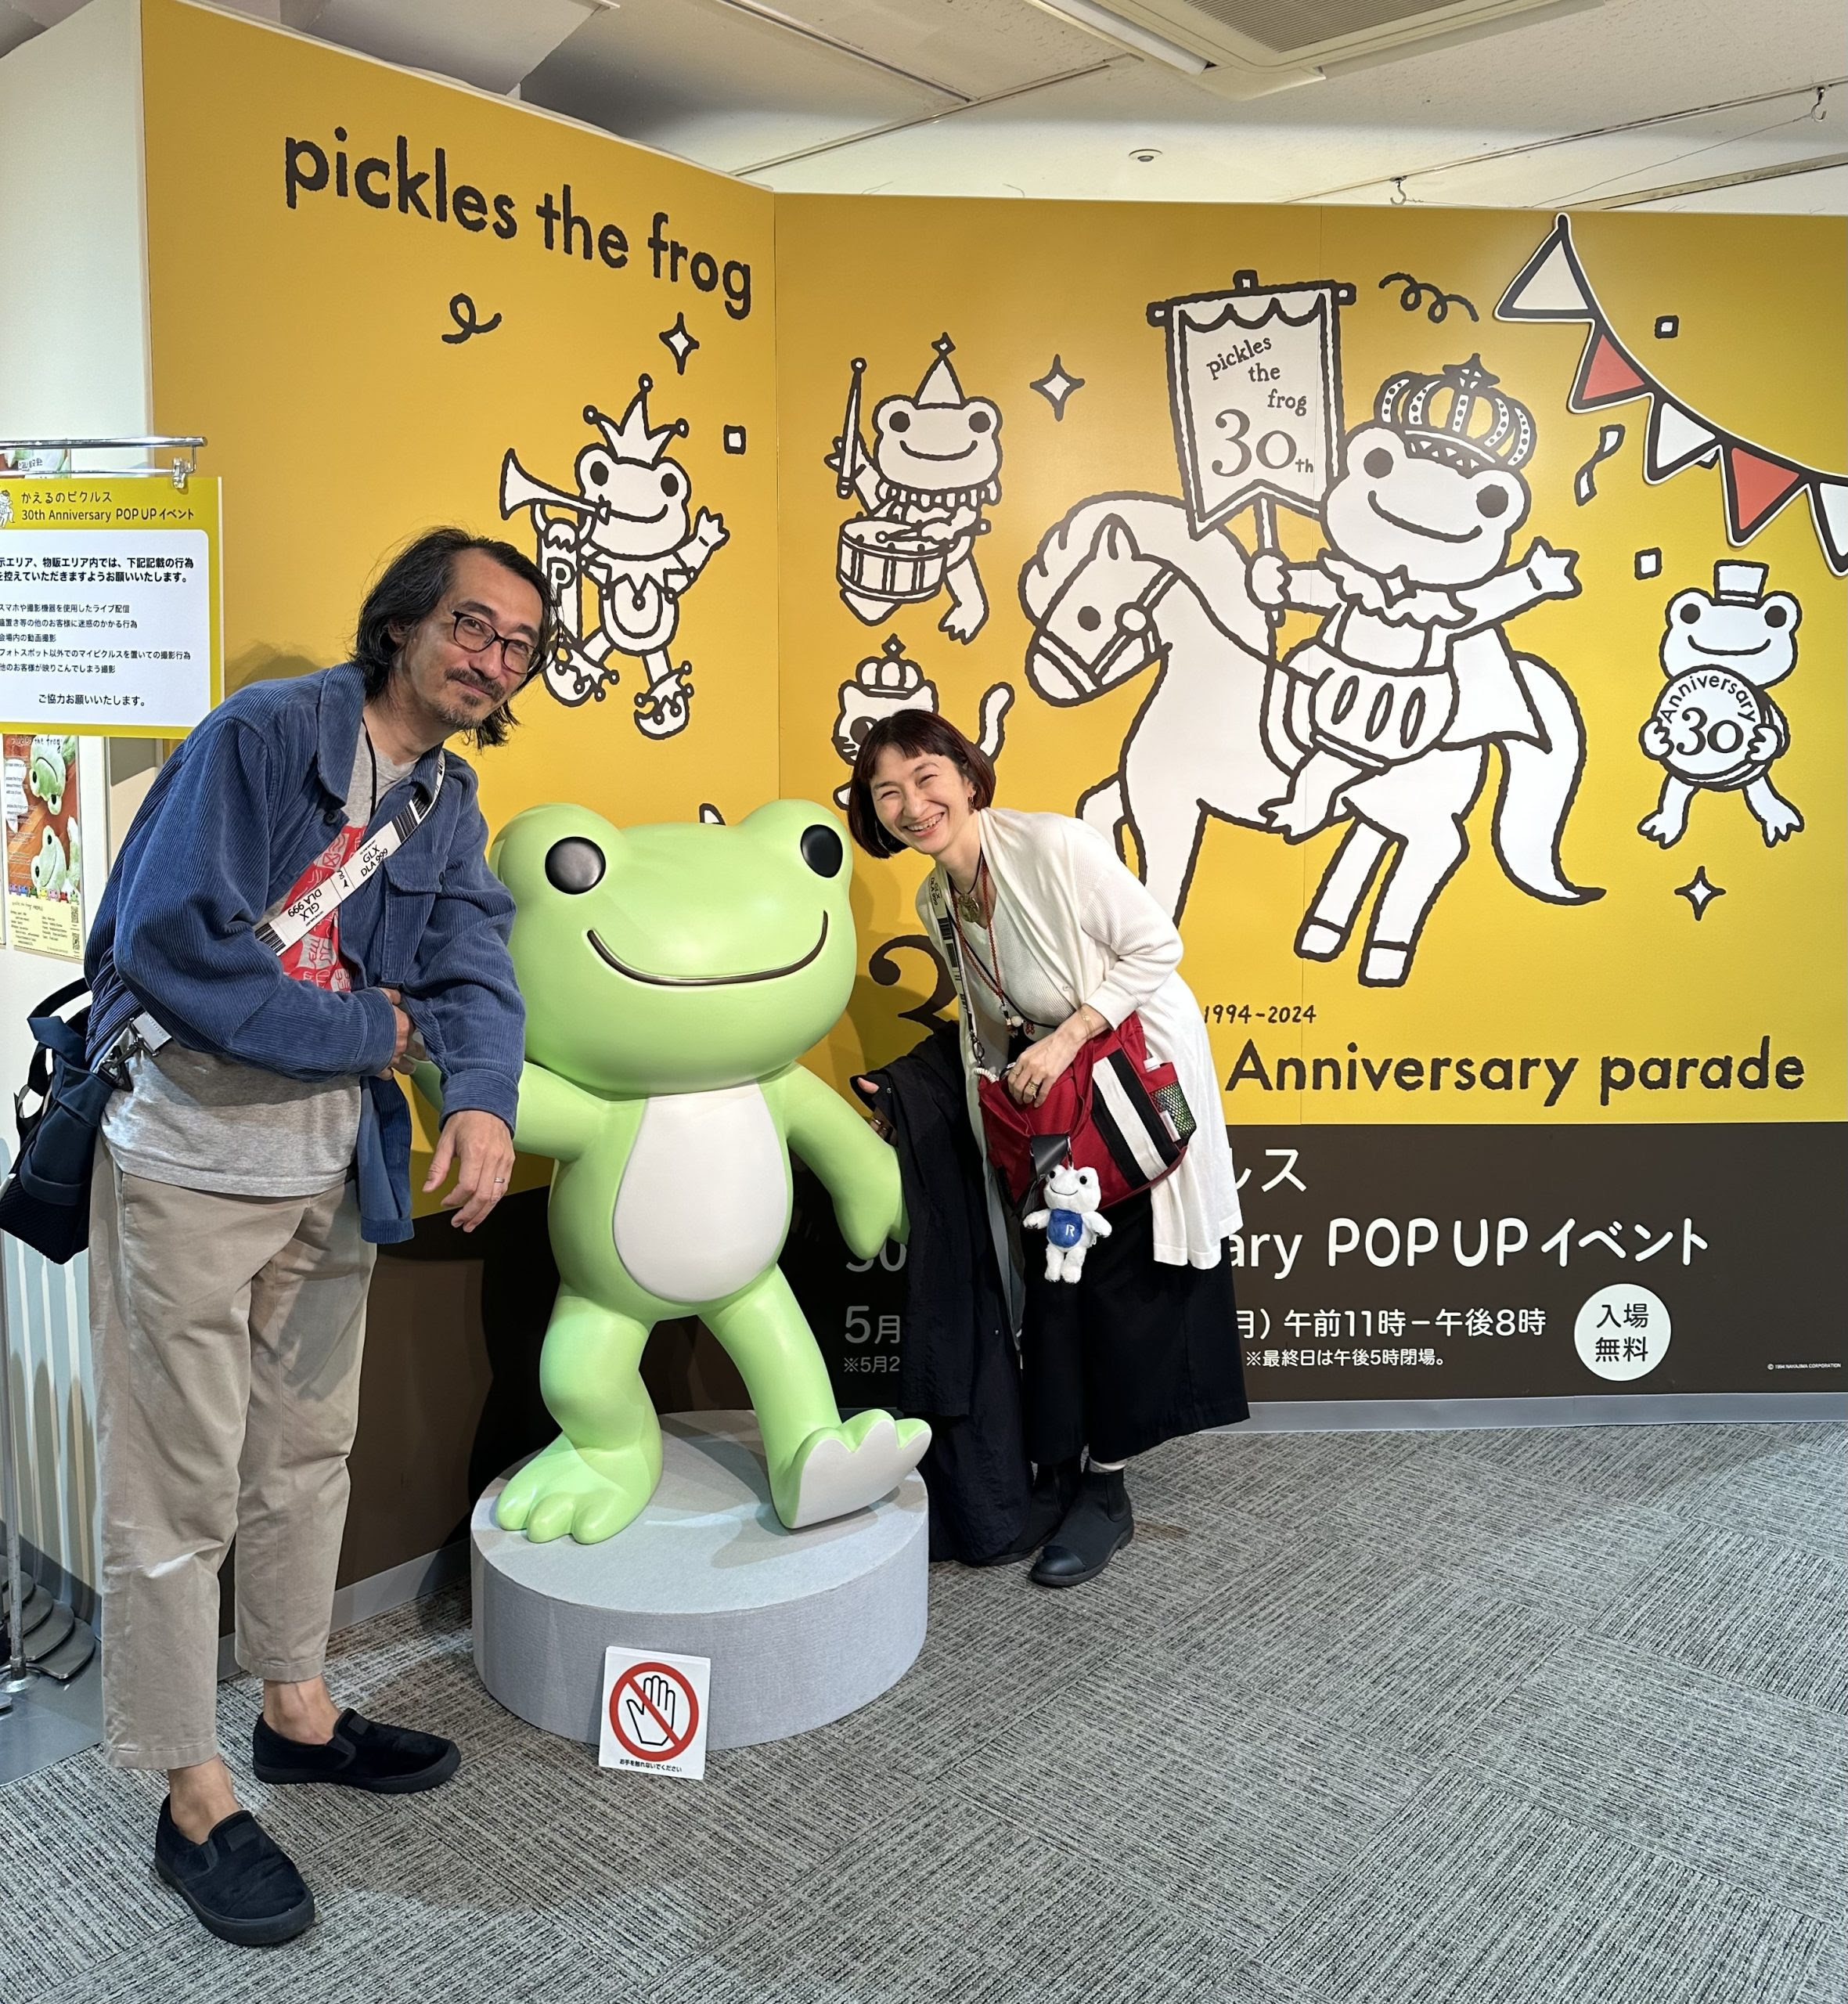 カエルのピクルスのフィギュアと一緒にいる佐藤安南と夫、松屋銀座のポップアップイベント会場にて